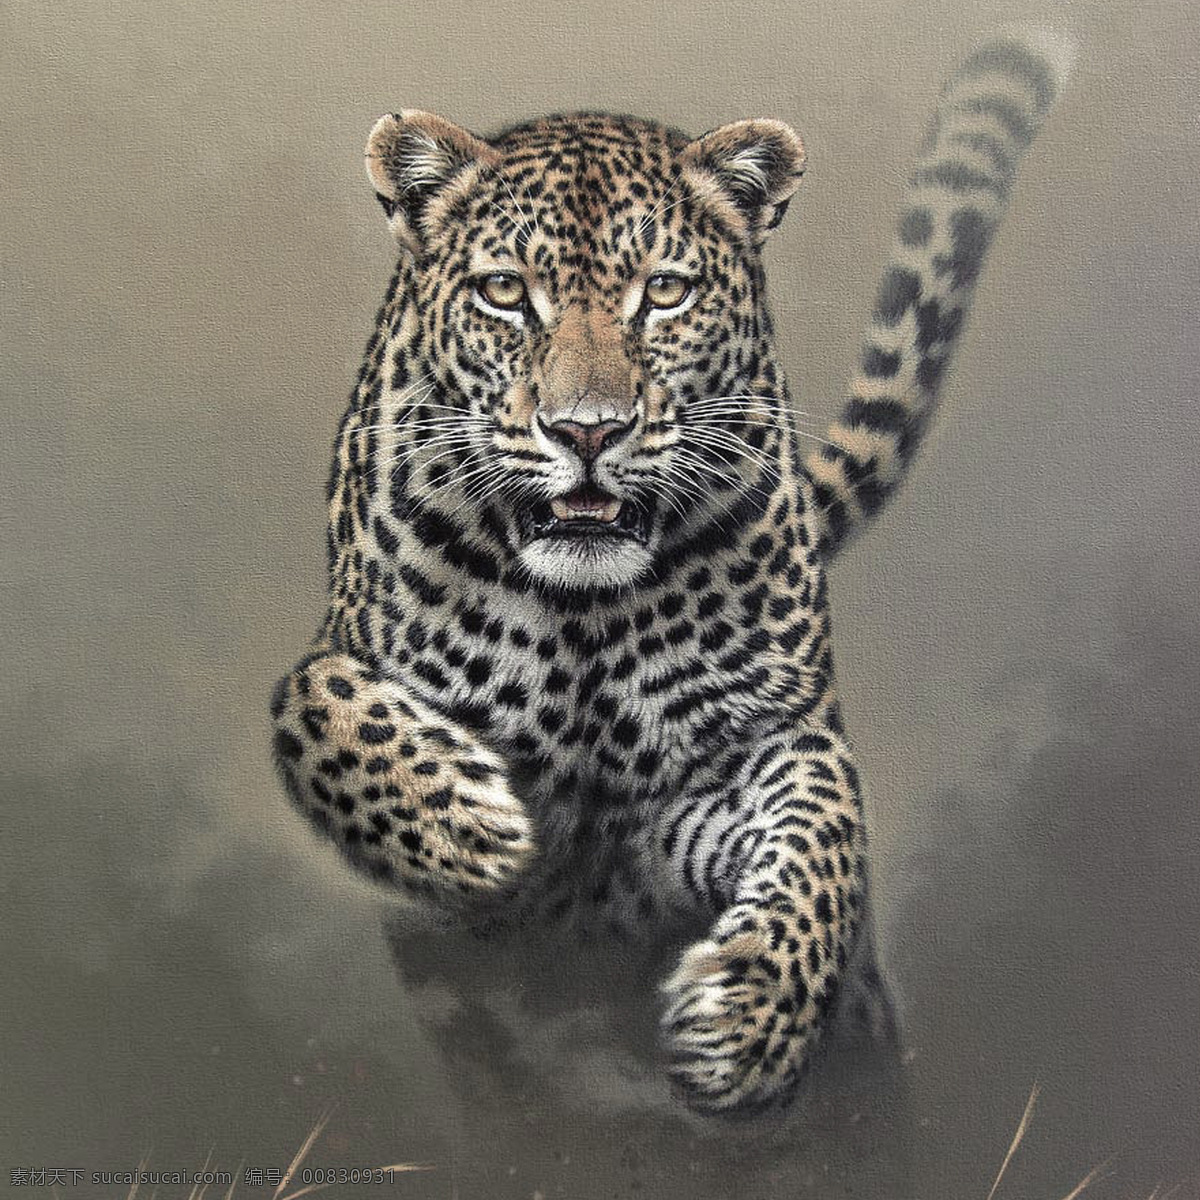 进攻中的猎豹 进攻 猎豹 豹子 豹 野生动物 动物世界 生物世界 手绘